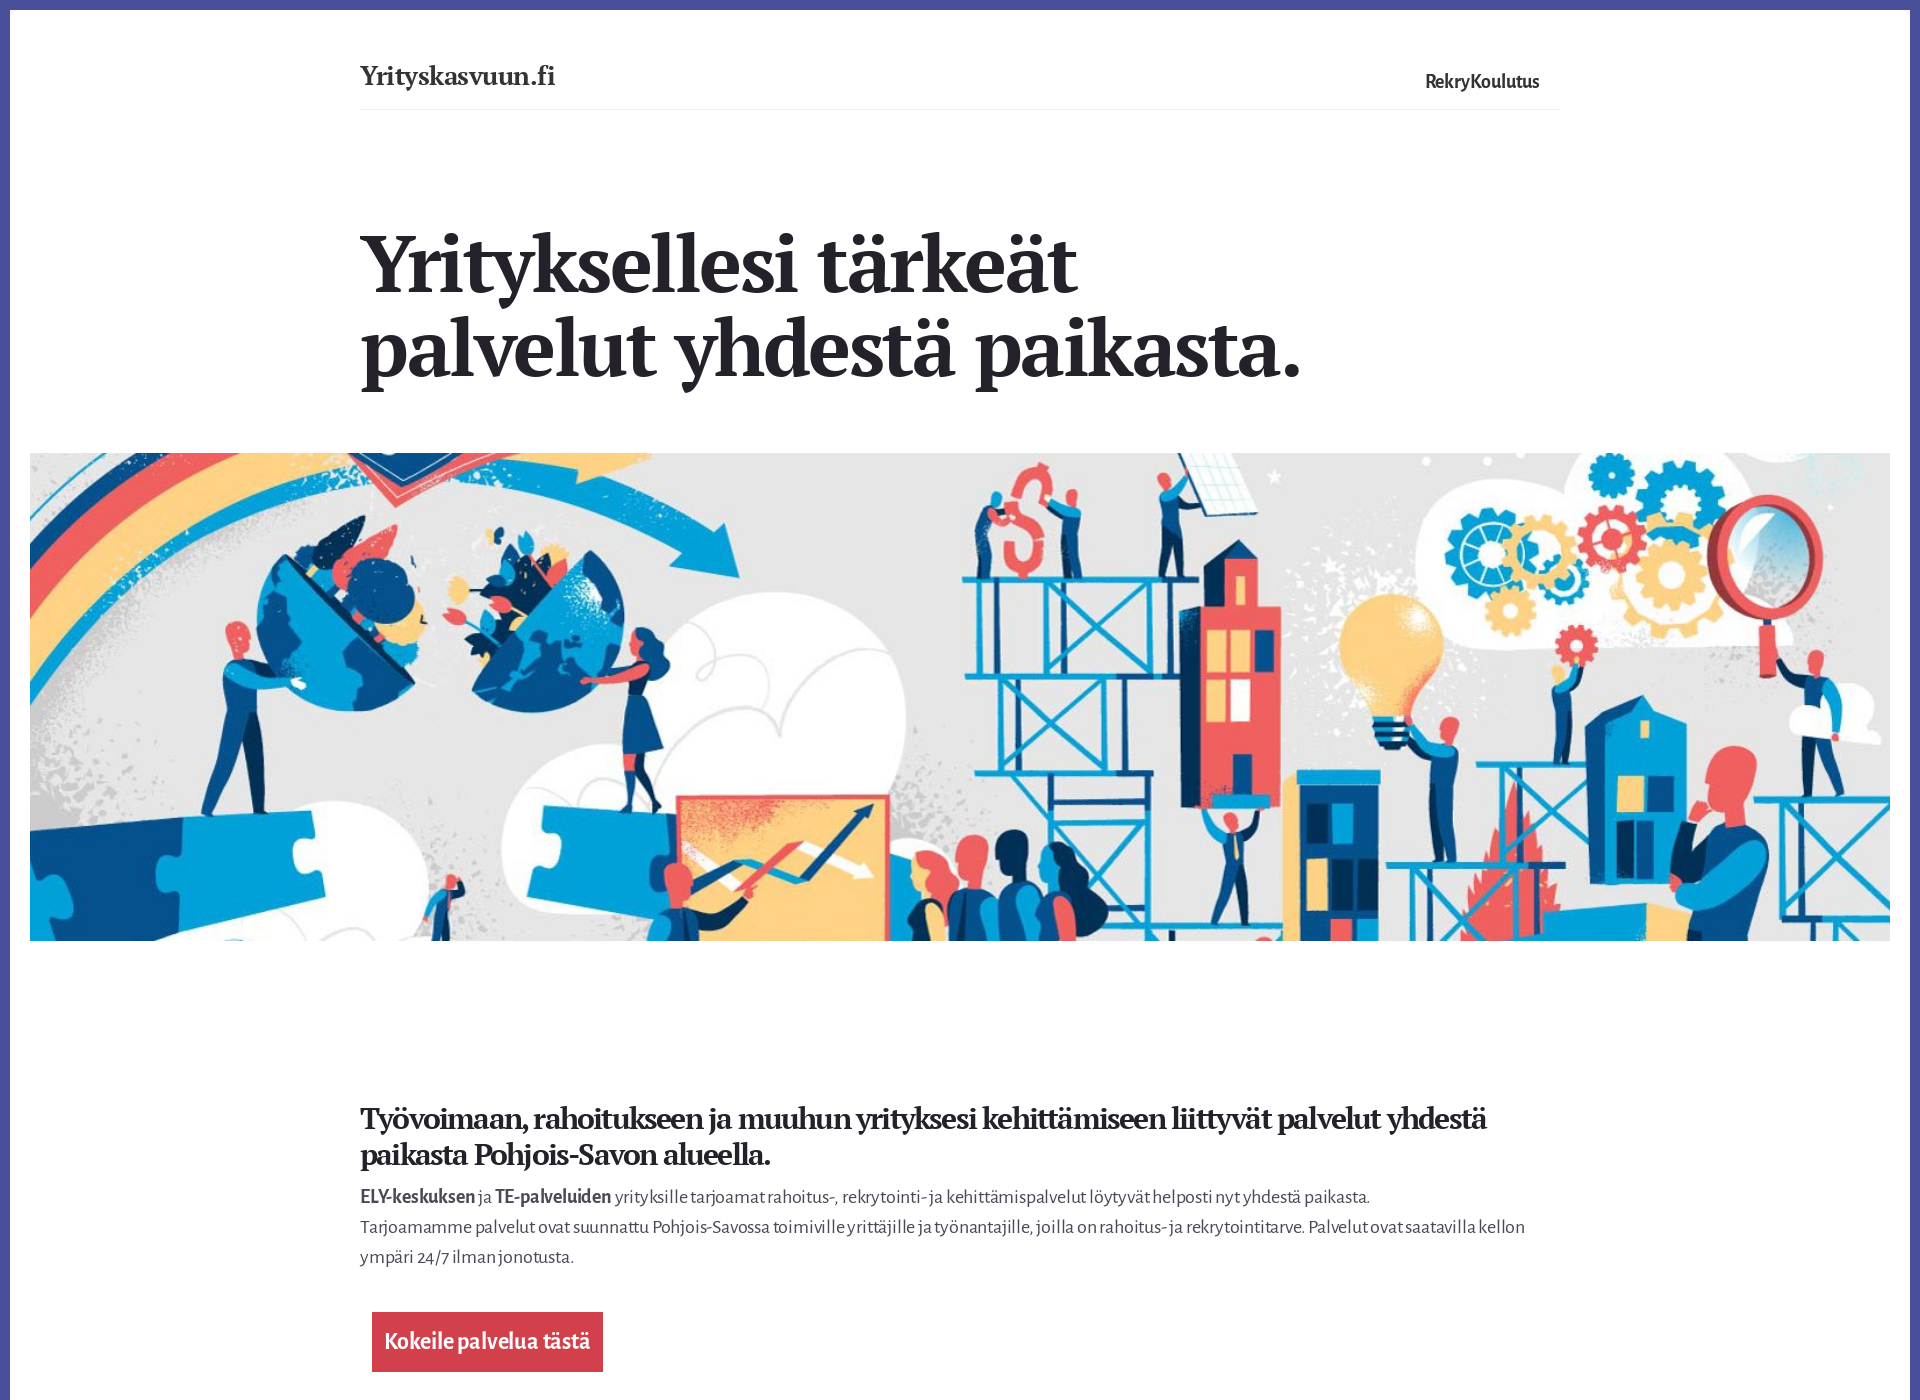 Skärmdump för yrityskasvuun.fi